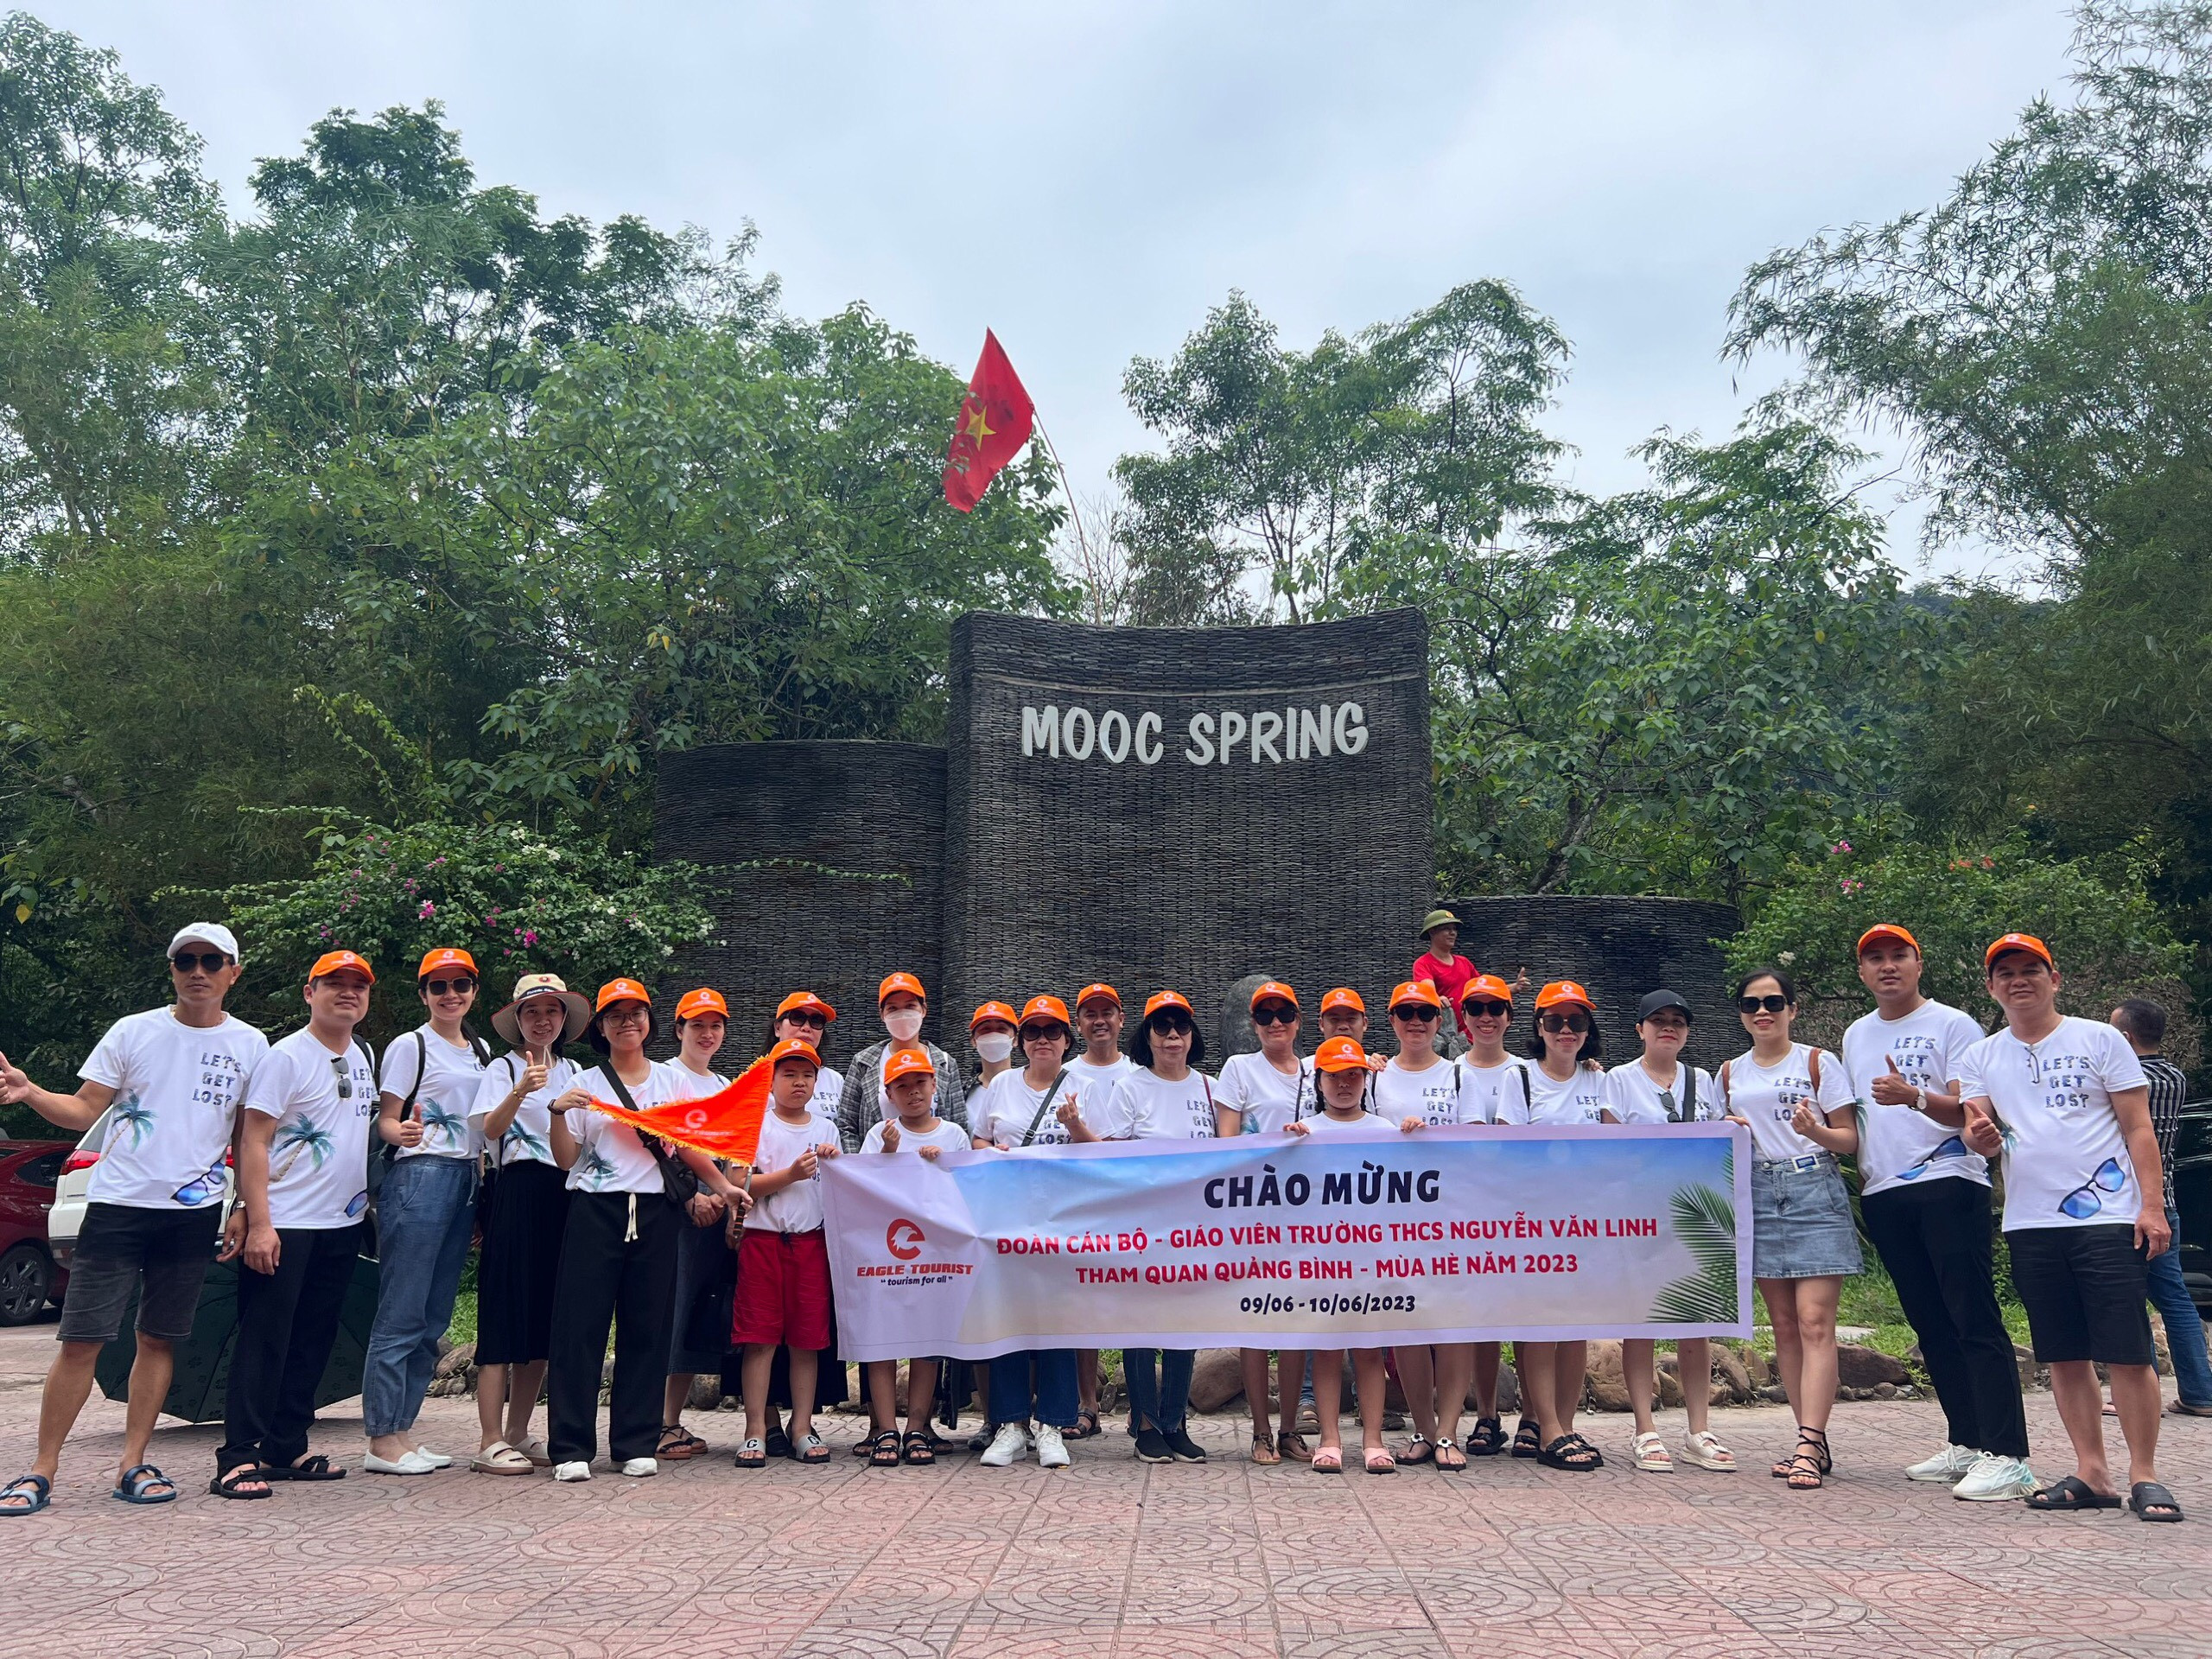 Đoàn Trường THCS Nguyễn Văn Linh trong tour du lịch "Huế - Suối Mooc Quảng Bình - Huế" (2 ngày 1 đêm)